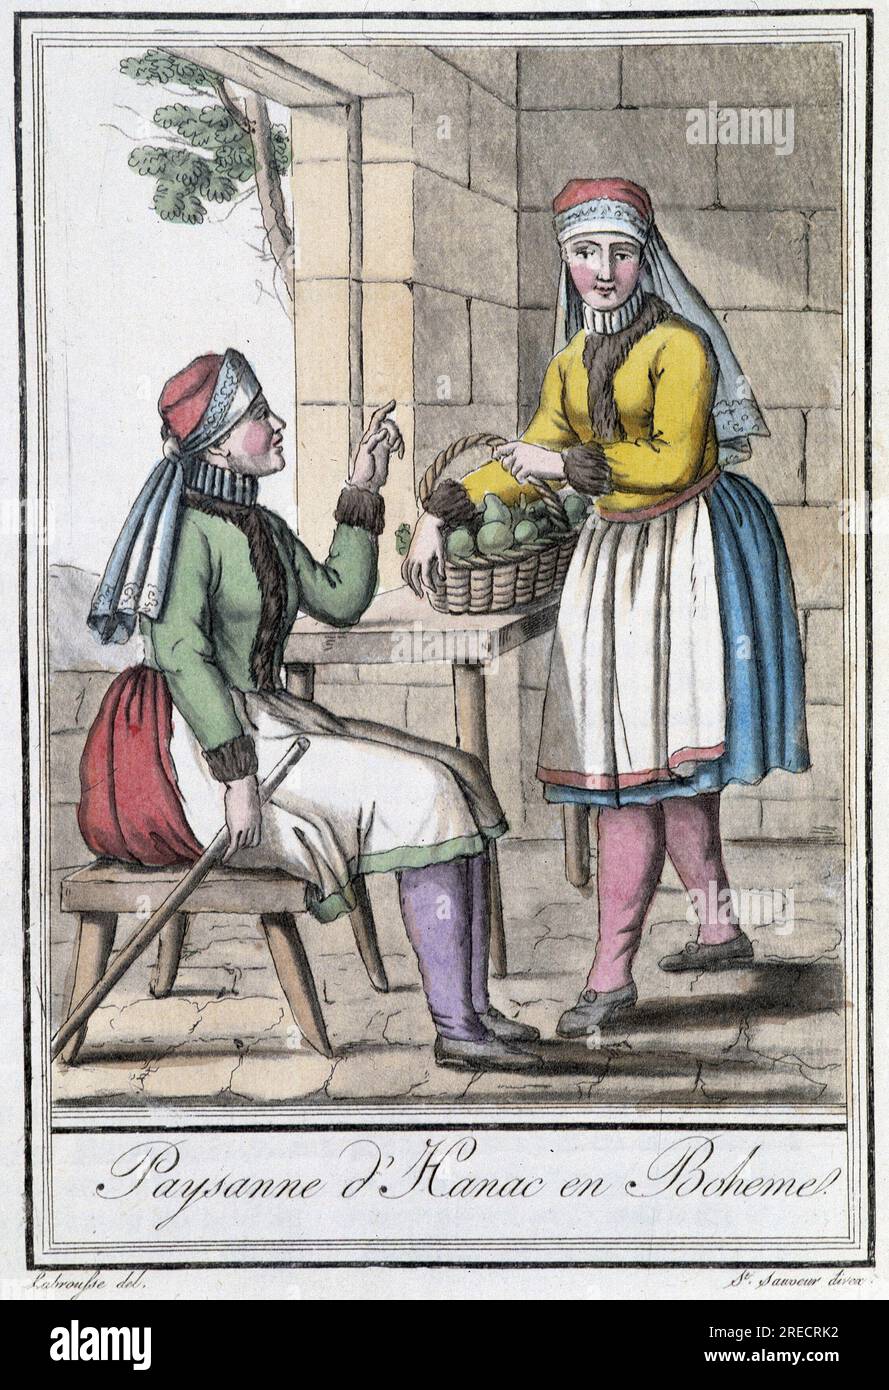 Paysanne d'Hanac, en Boheme (Tchecoslovaquie) - in 'Encyclopedie des voyages' par Grasset St Sauveur, Paris, 1796 Stock Photo